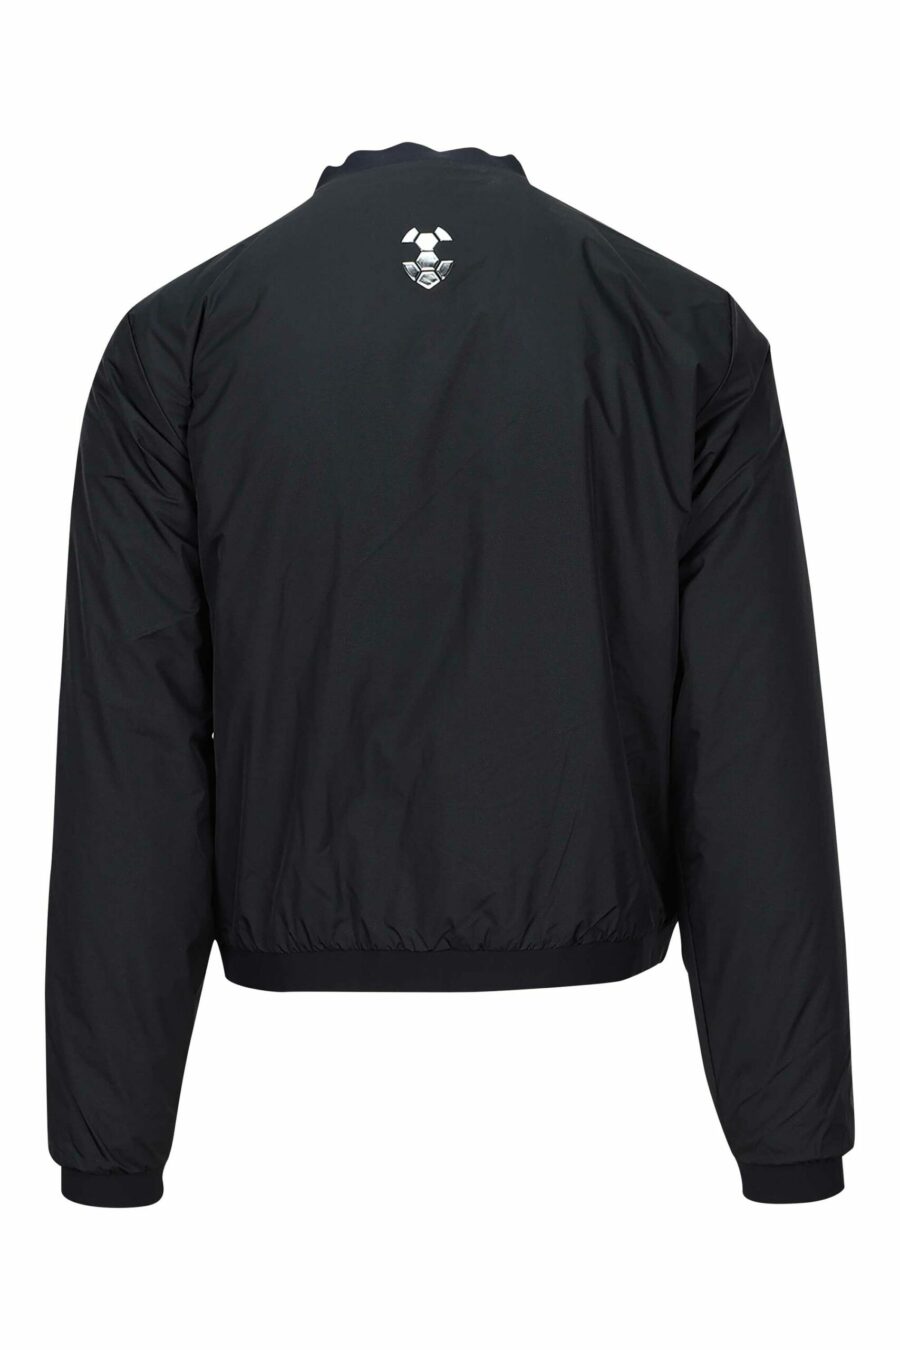 Schwarze Jacke mit "lux identity" Minilogo und seitlichem Logo - 8056787938434 2 skaliert